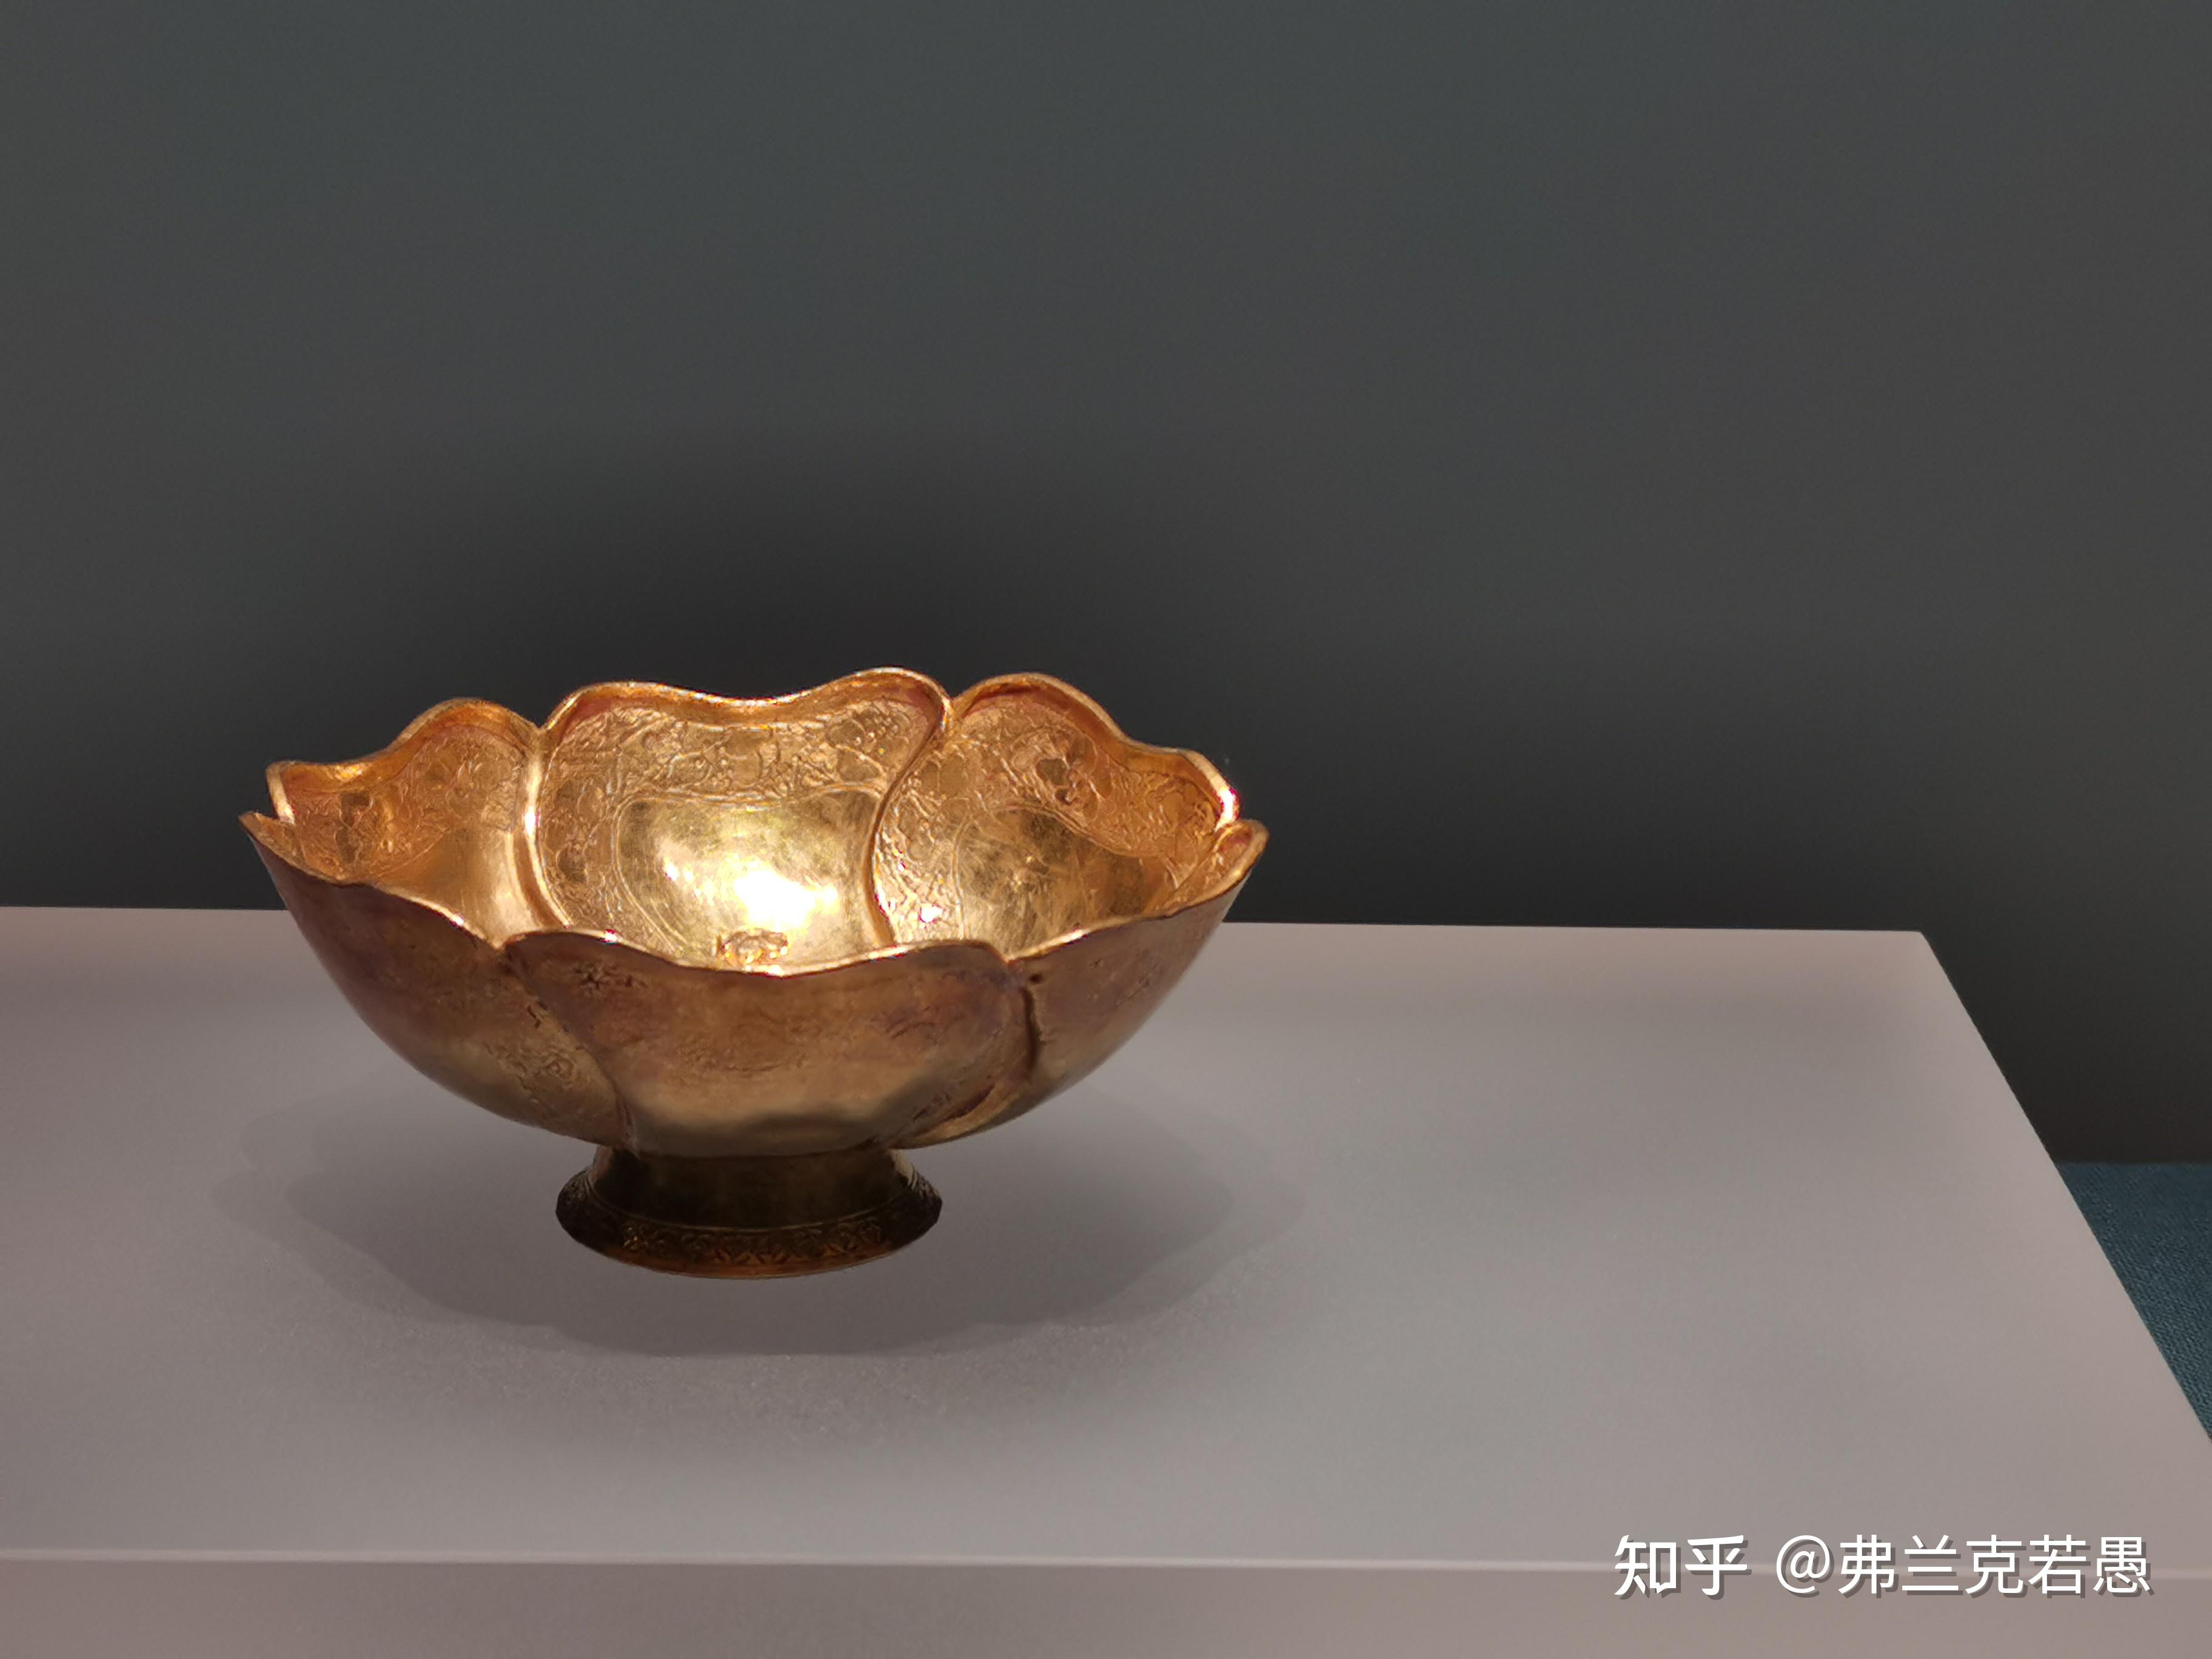 安徽省博物馆藏品中具有特色的文物有哪些? 